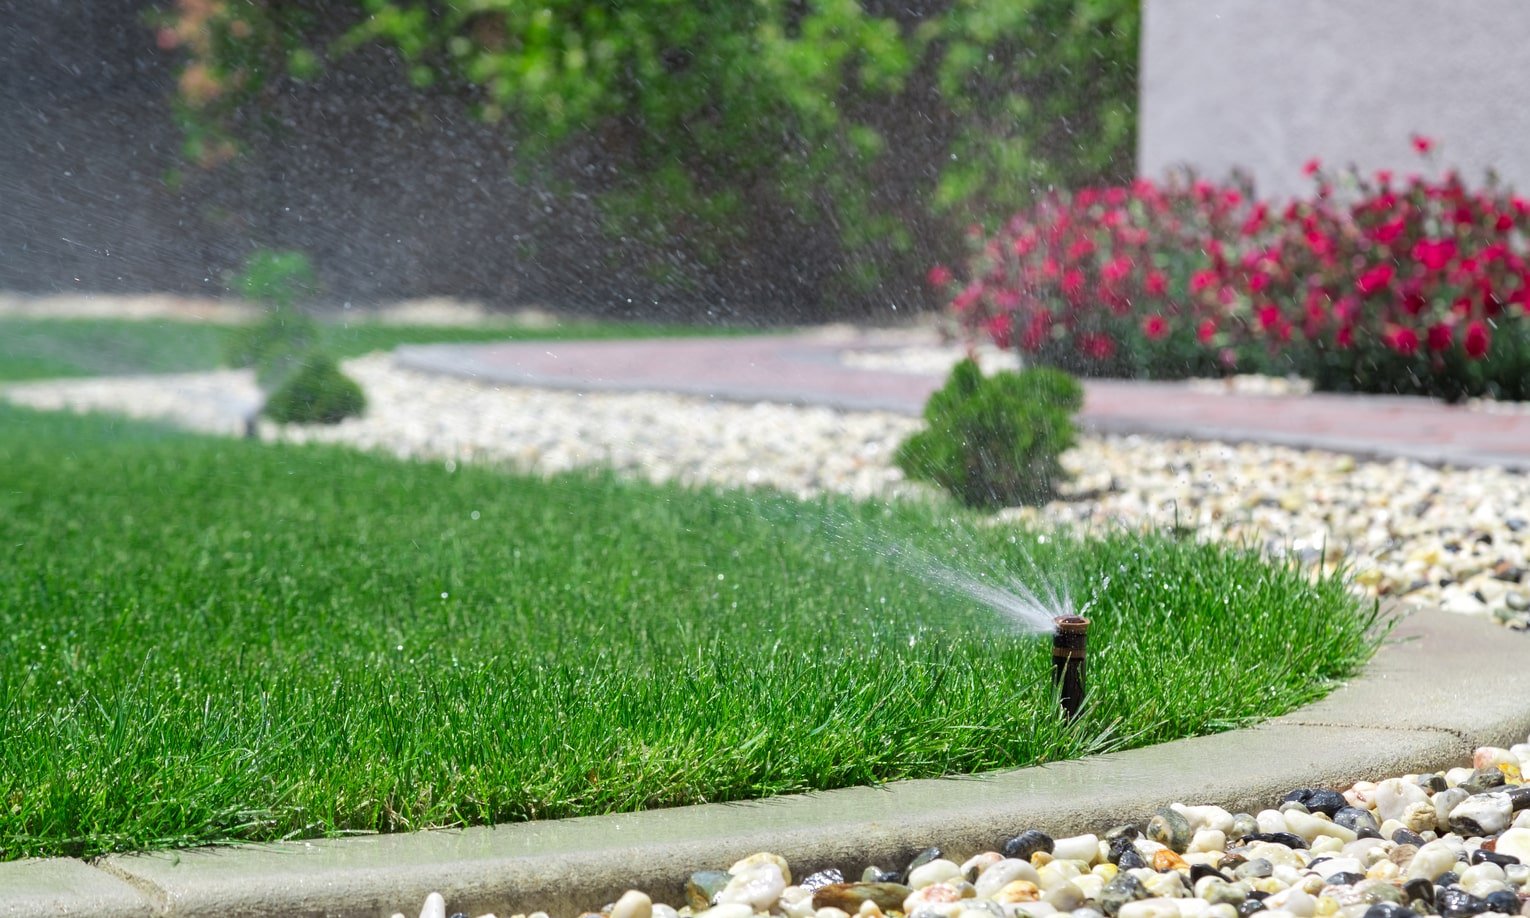 система полива двора распыляет воду на газон